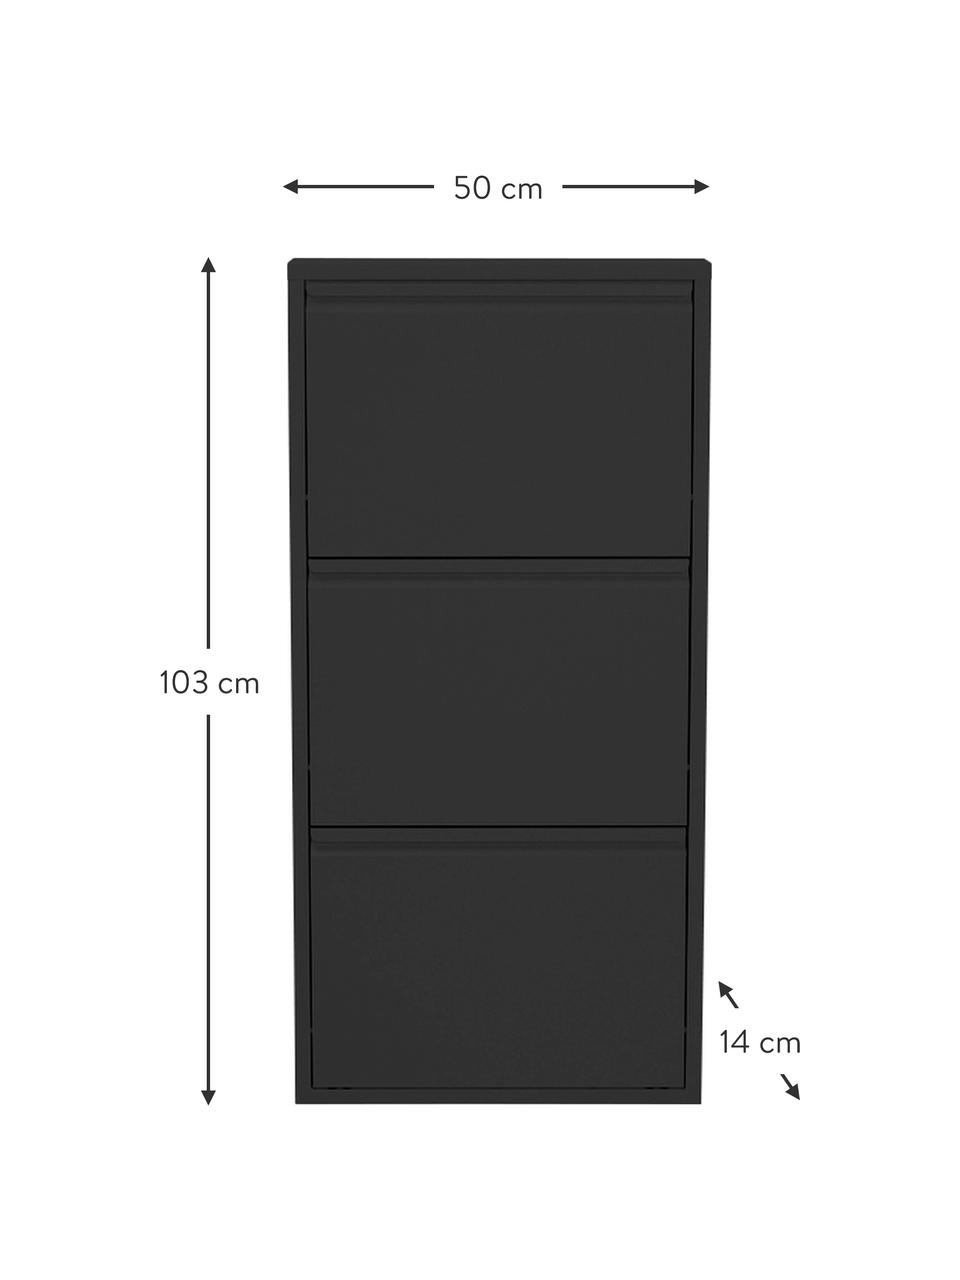 Wand-Schuhschrank Caruso mit Klappfächern, Stahl, pulverbeschichtet, Schwarz, B 50 x H 103 cm